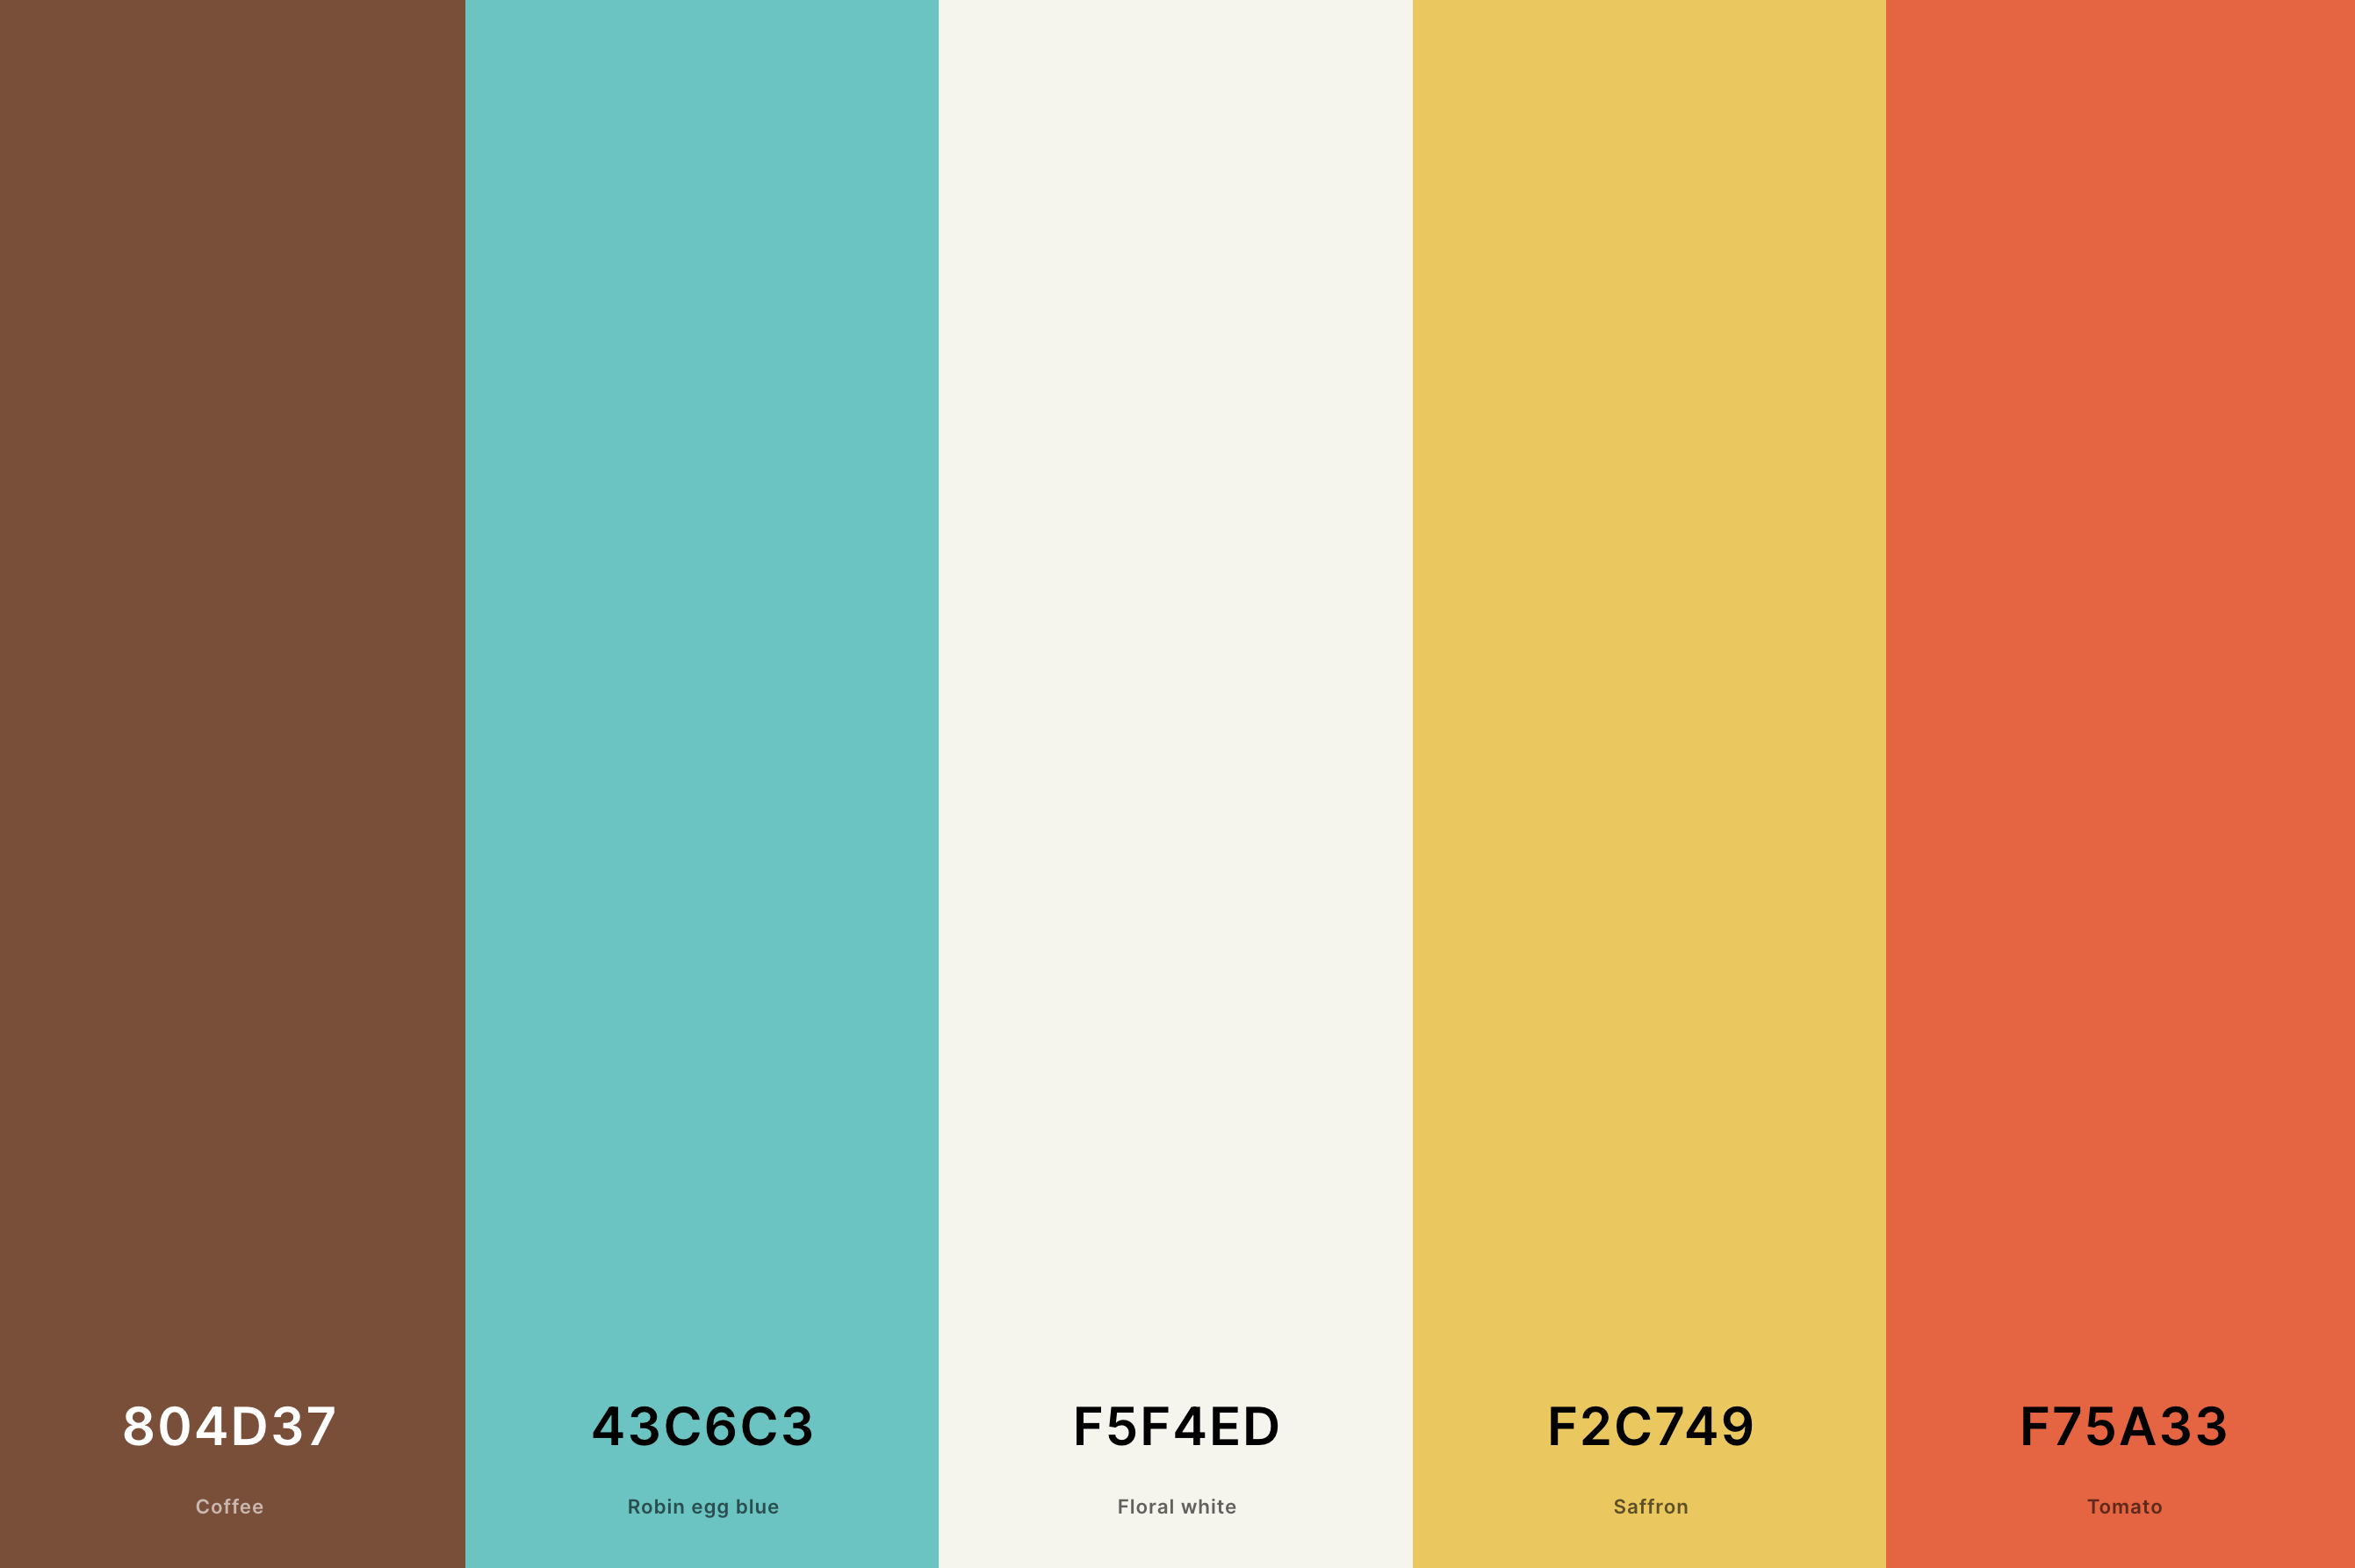 10. Retro Vintage Color Palette Color Palette with Coffee (Hex #804D37) + Robin Egg Blue (Hex #43C6C3) + Floral White (Hex #F5F4ED) + Saffron (Hex #F2C749) + Tomato (Hex #F75A33) Color Palette with Hex Codes